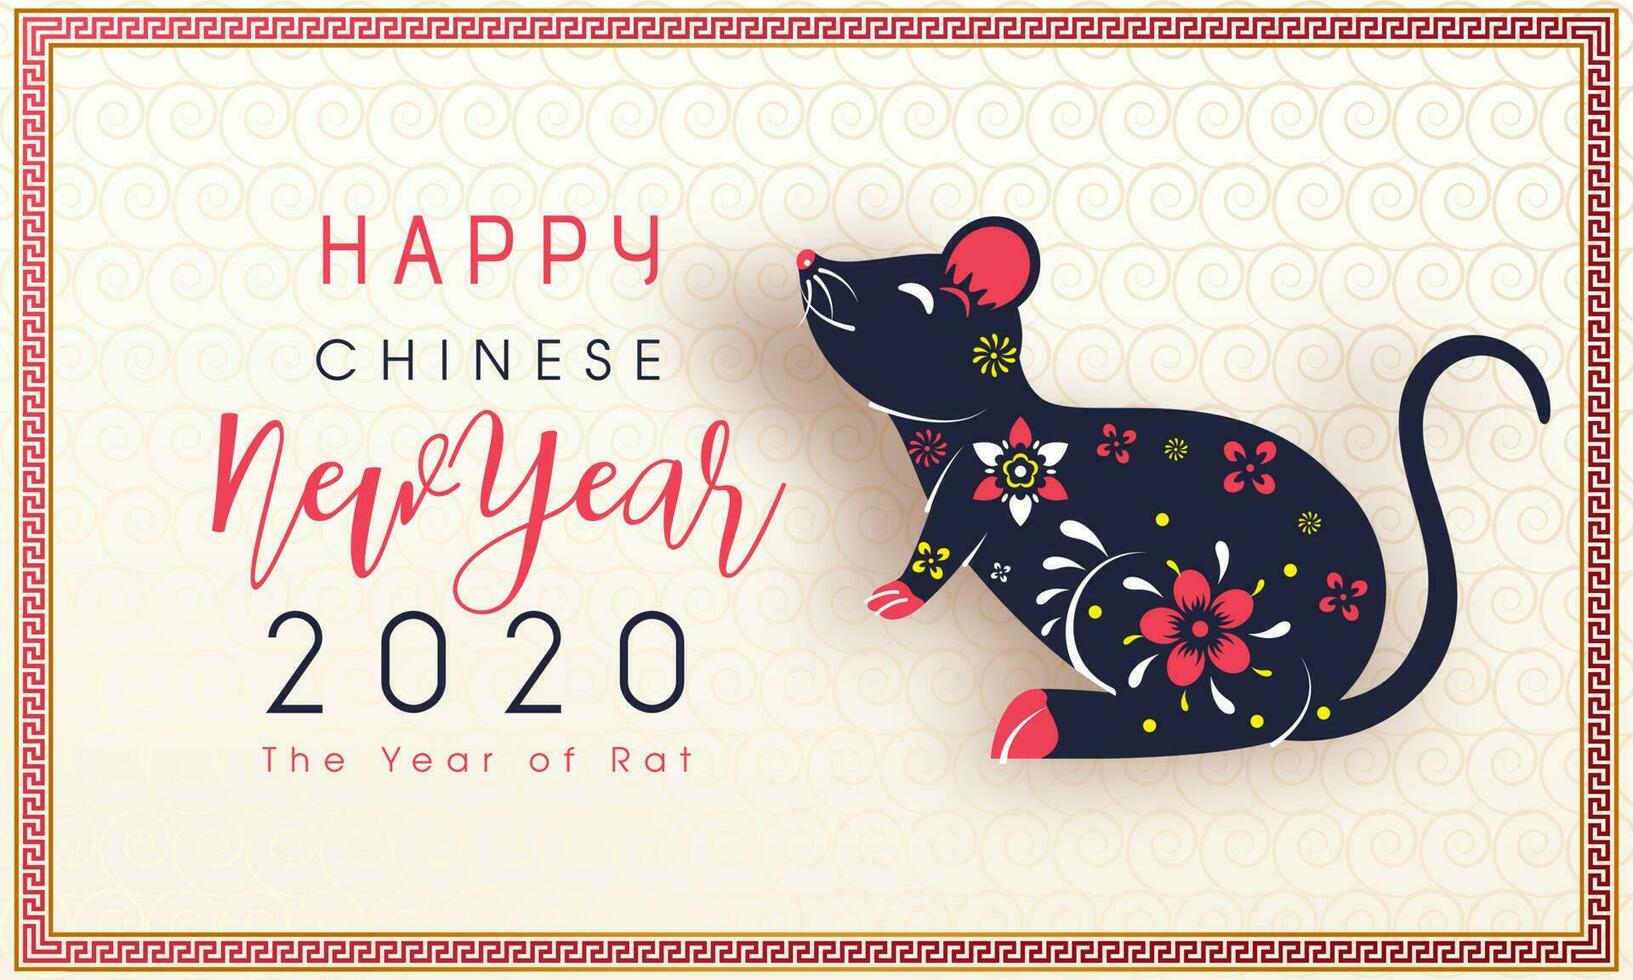 contento chino nuevo año celebracion saludo tarjeta diseño con rata zodíaco firmar en sin costura remolino modelo antecedentes para 2020 el año de rata. vector